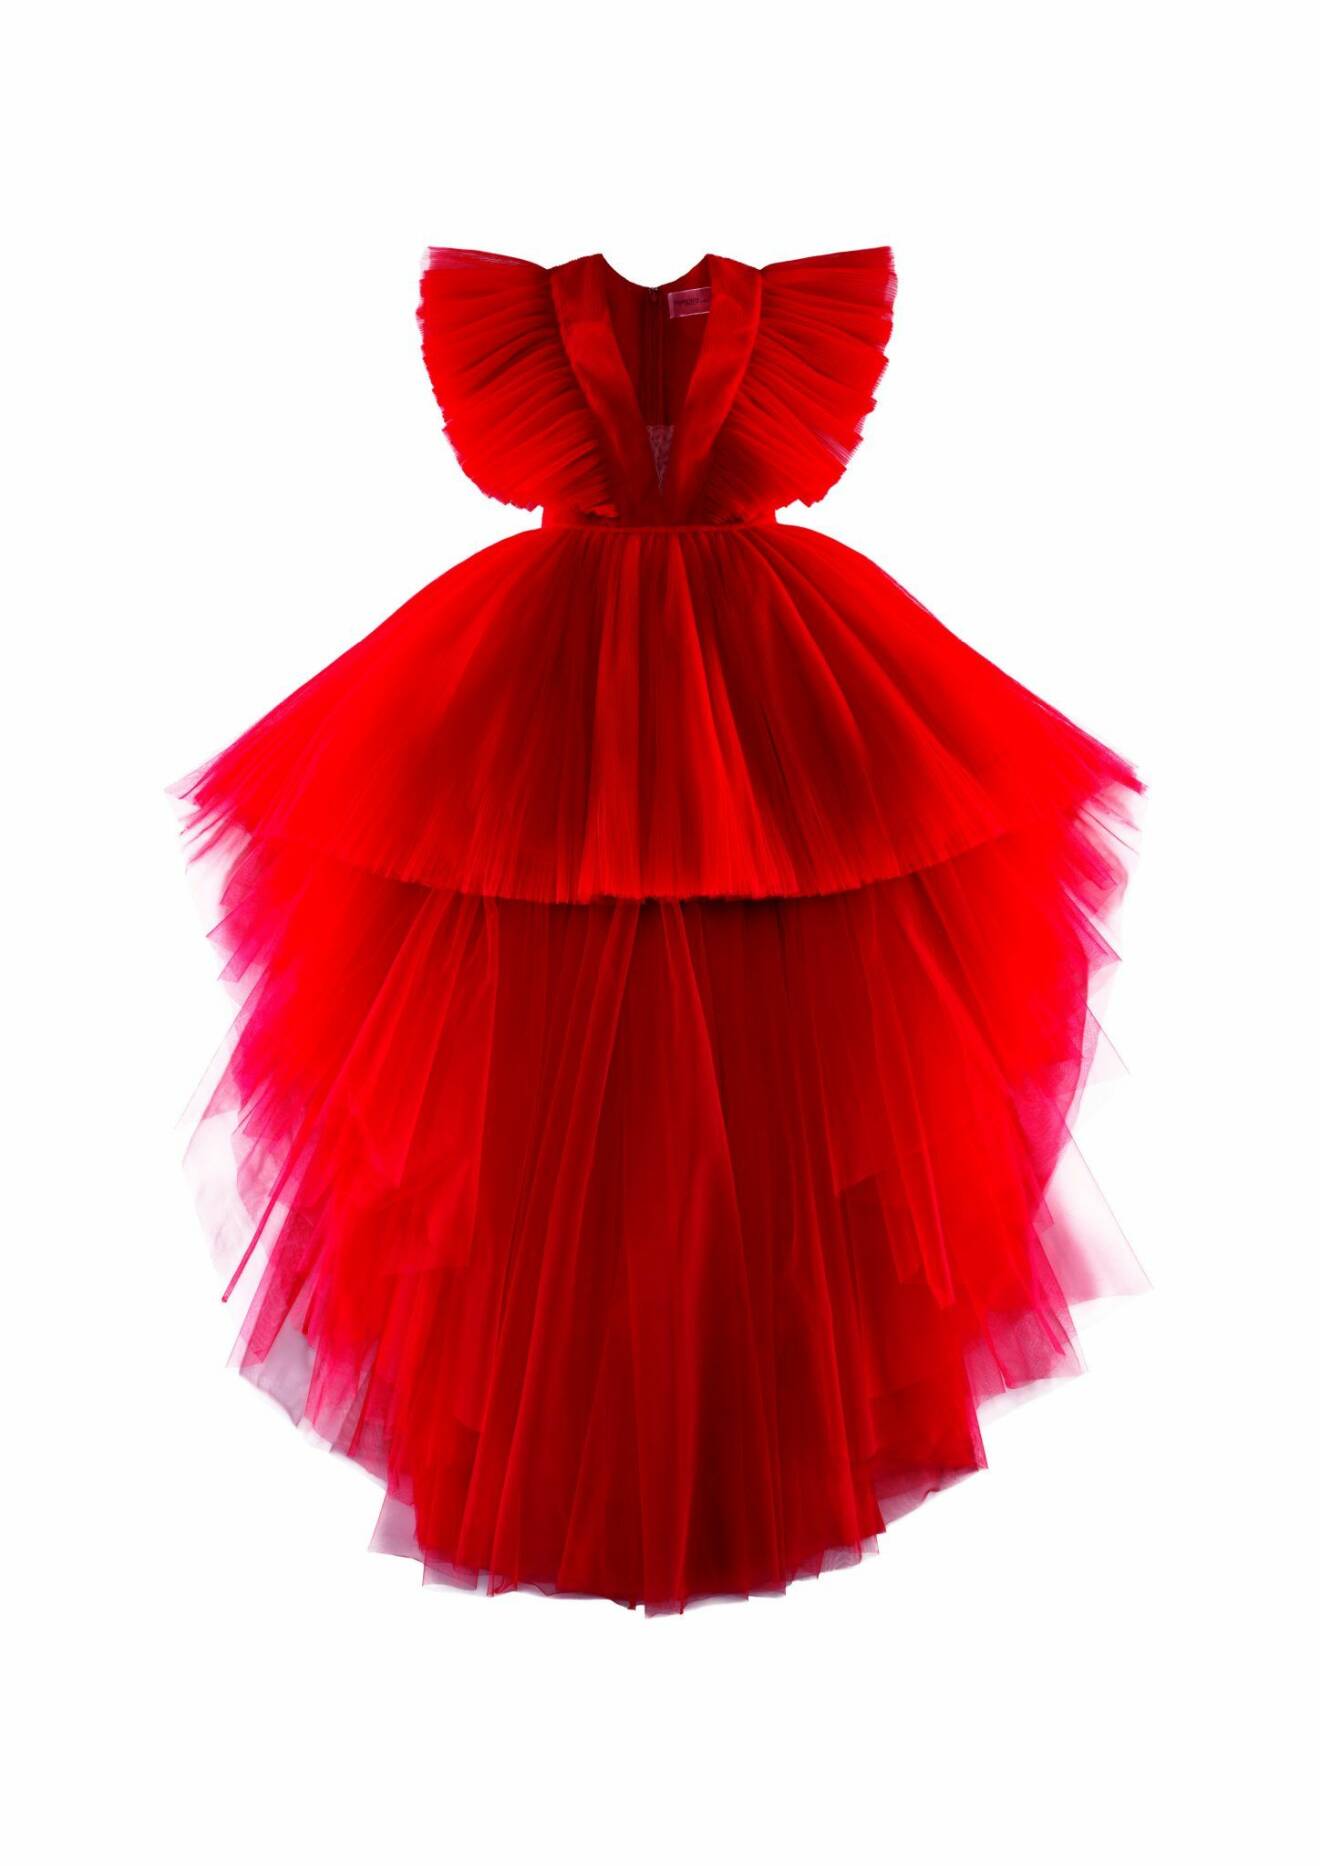 Maffig röd tyllklänning som bars av Kendall Jenner under visningen i Rom.